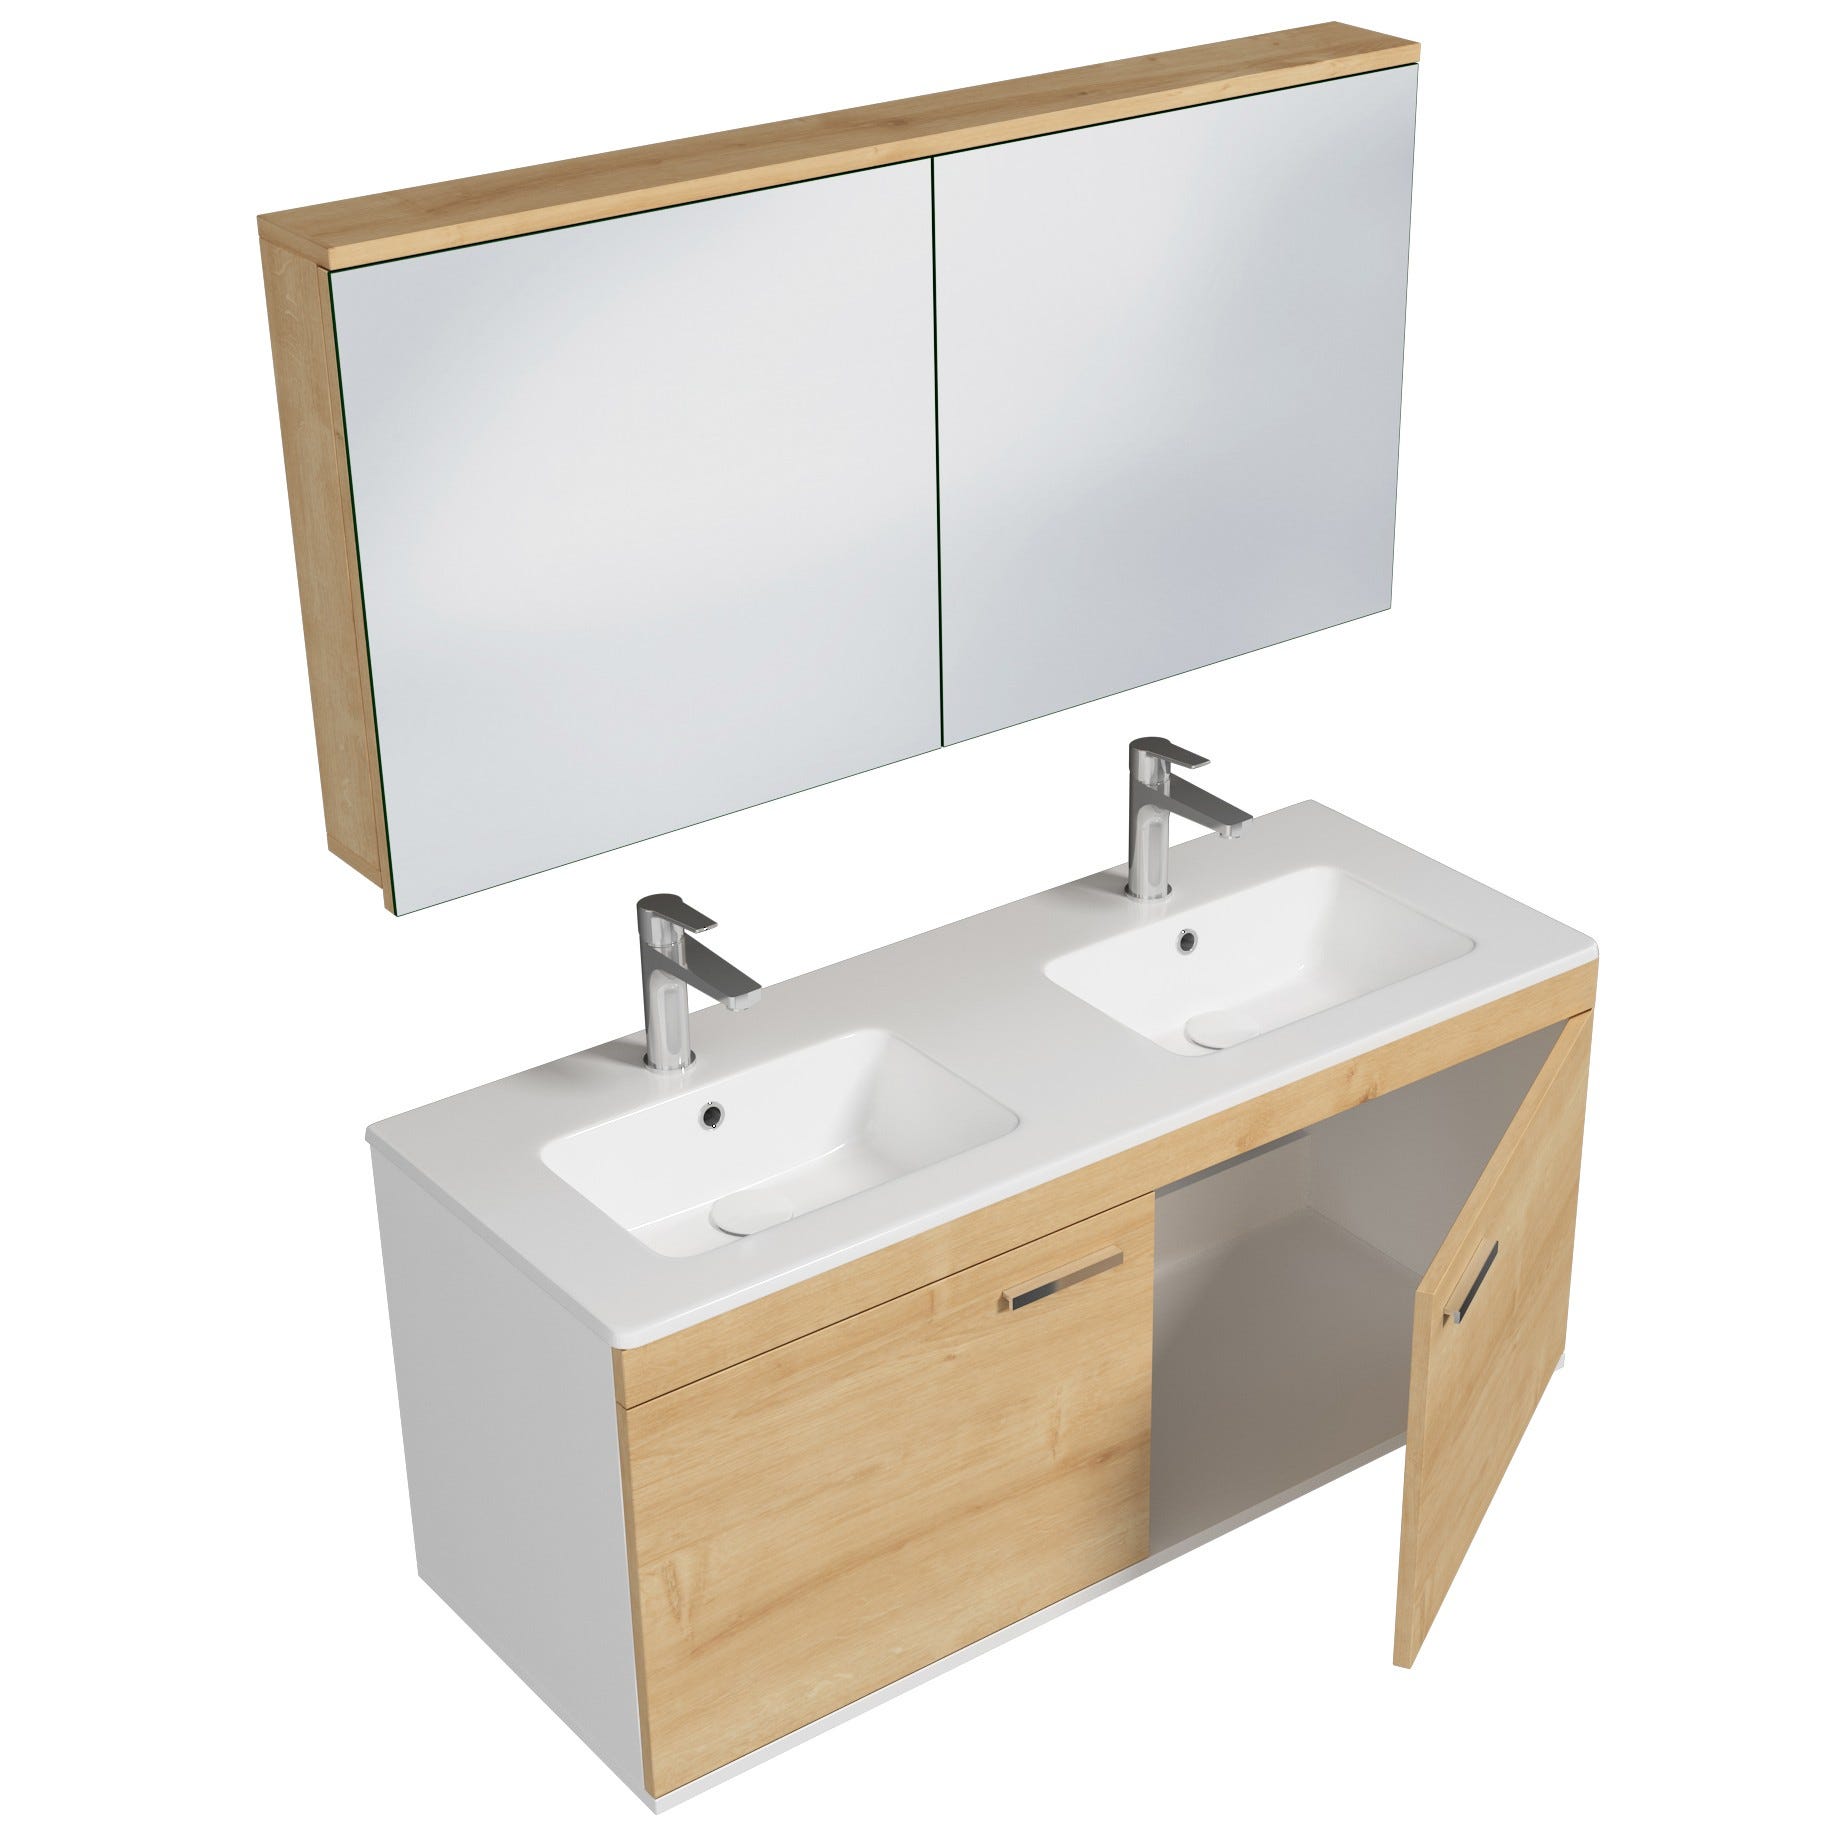 RUBITE Meuble salle de bain double vasque 2 portes chêne clair largeur 120 cm + miroir armoire 1